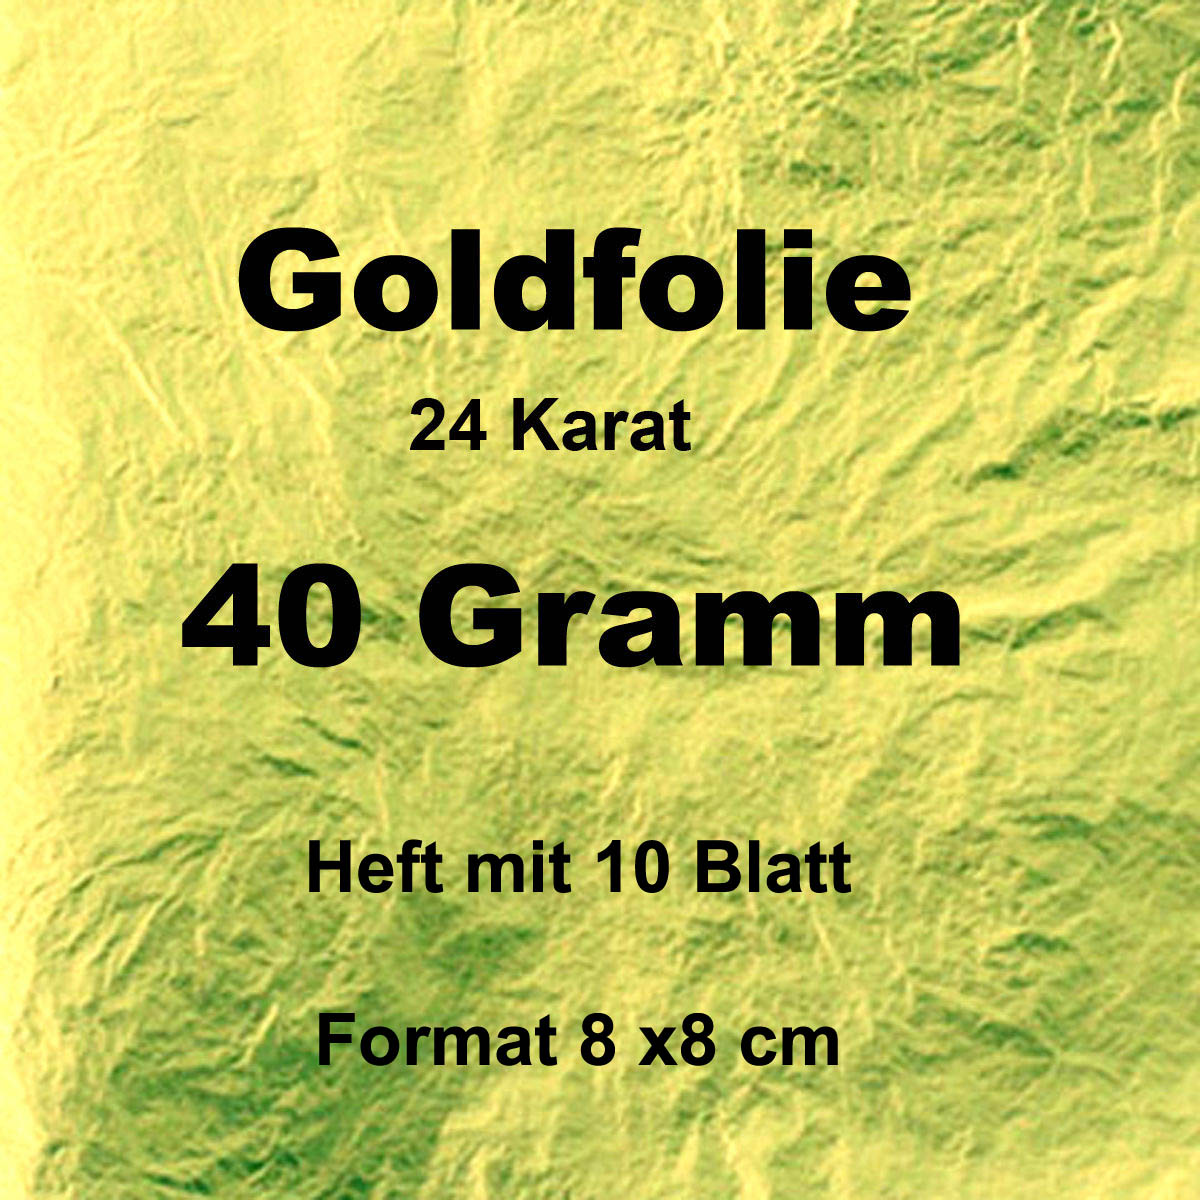 Goldfolie 40 Gr. 10 Blatt, 8x8 cm